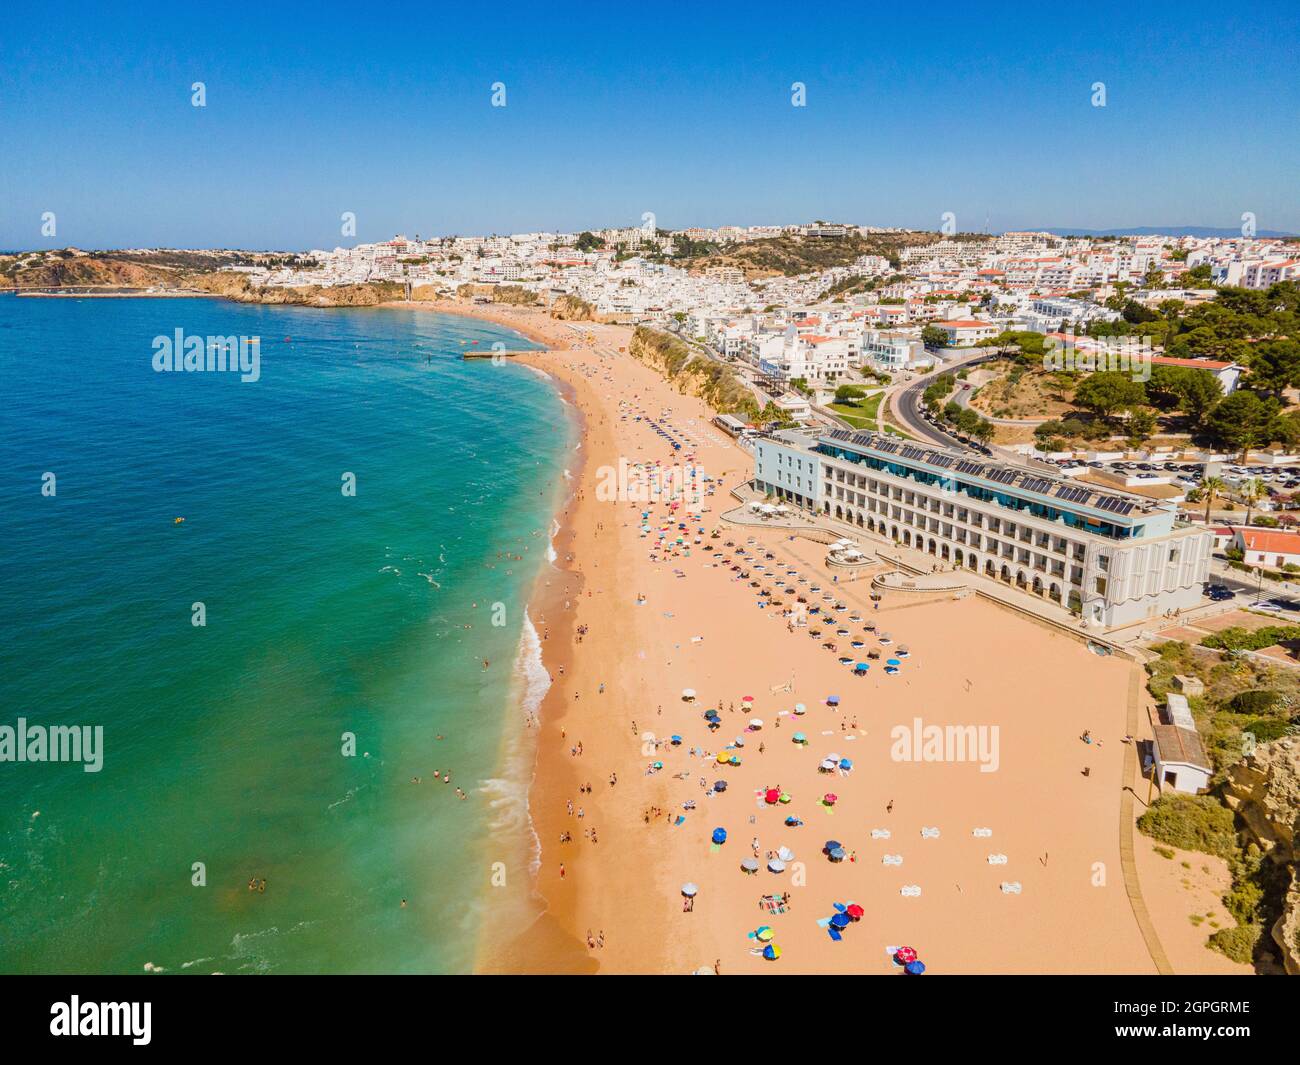 Portugal, Algarve, Albufeira, la plage (vue aérienne) Banque D'Images